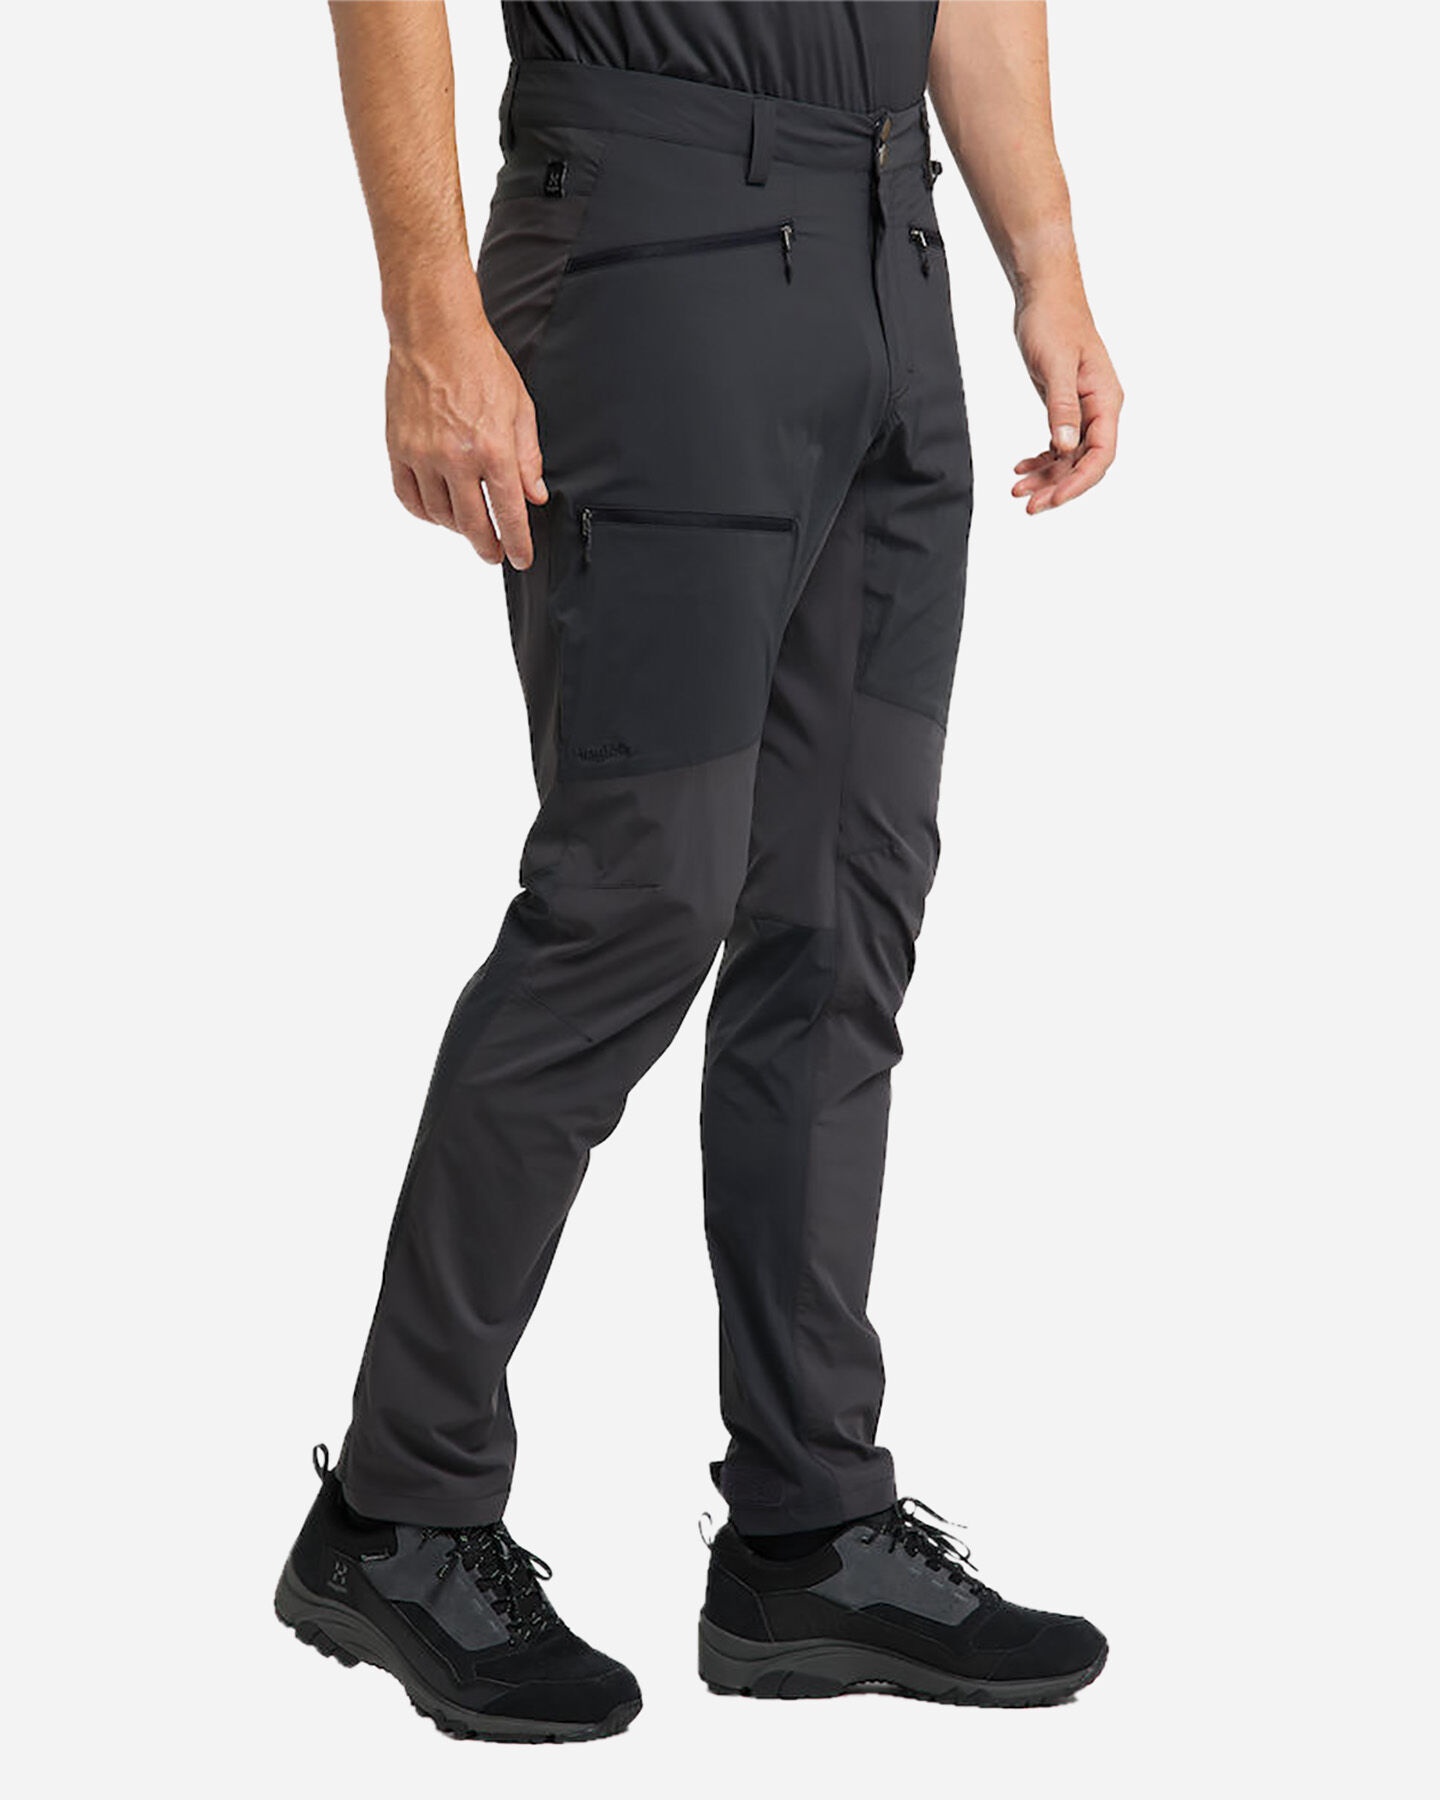  Pantalone outdoor HAGLOFS LITE FLEX  M S4077000|1|S scatto 3